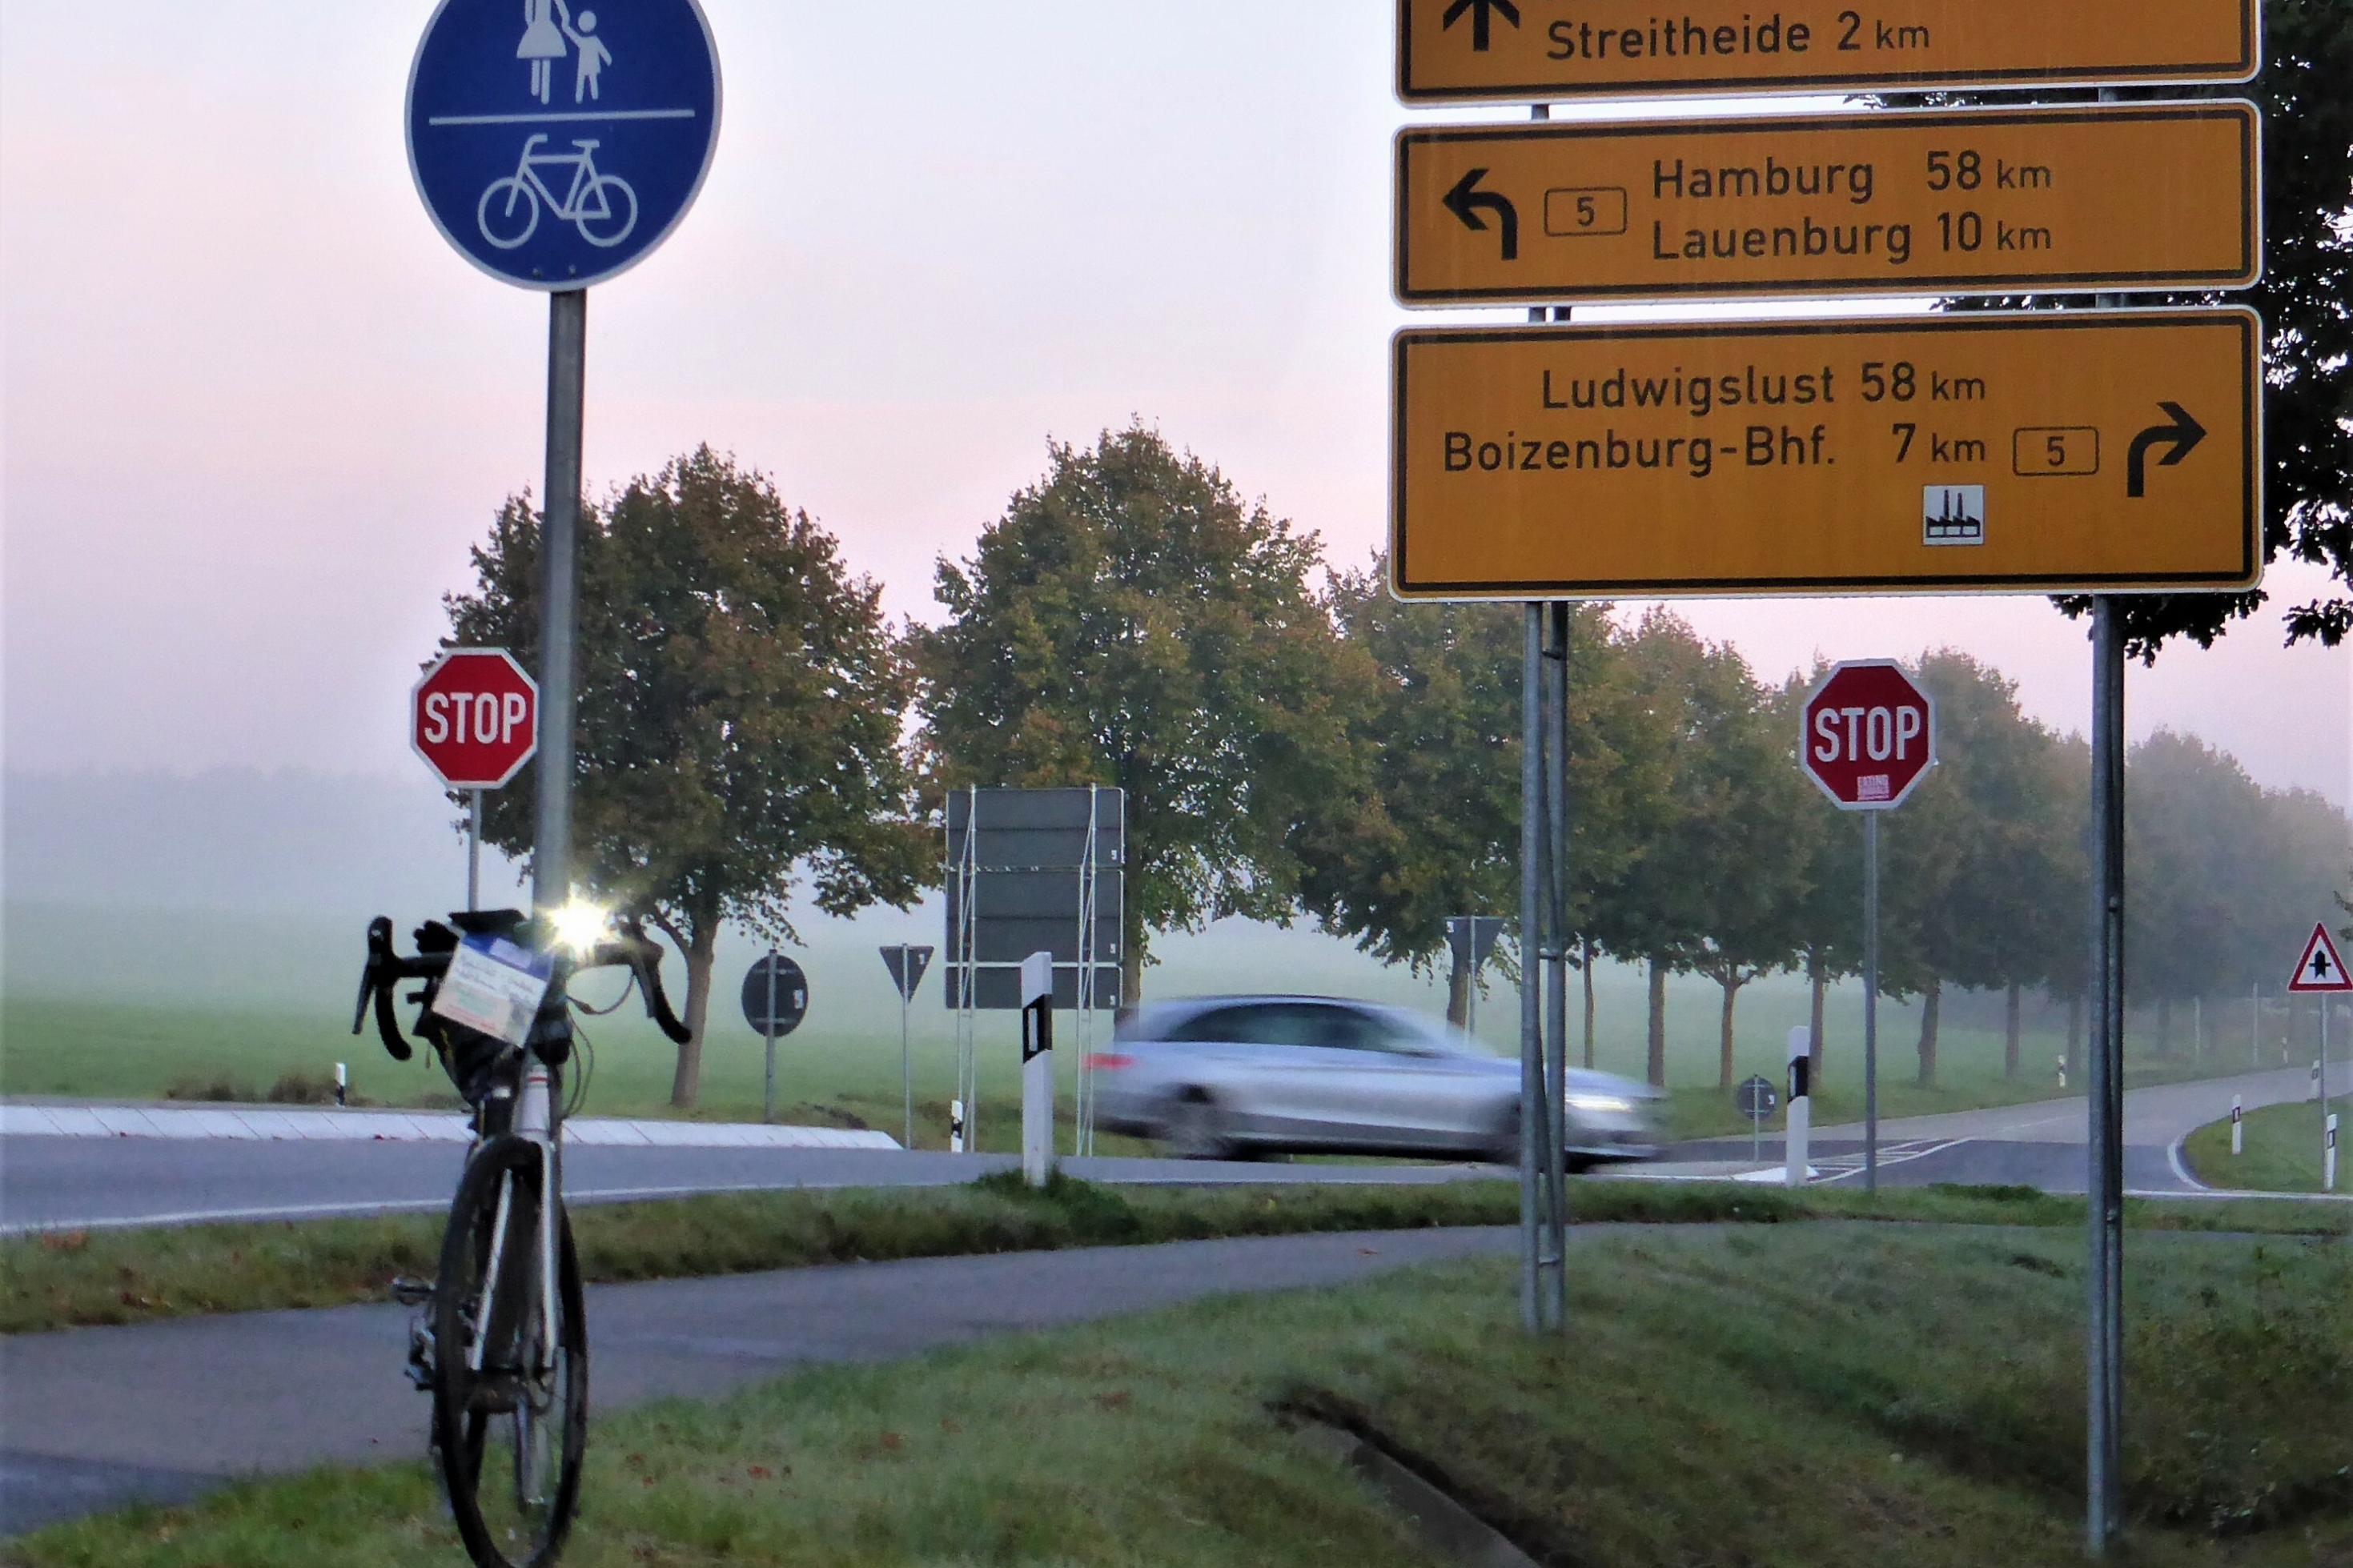 Das Rennrad des RadelndenReporters lehnt im fahlen Morgenlicht an einem Radwege-Schild, hinter dem Stoppschilder sowie ein vorbeirauschender Pkw zu sehen sind.